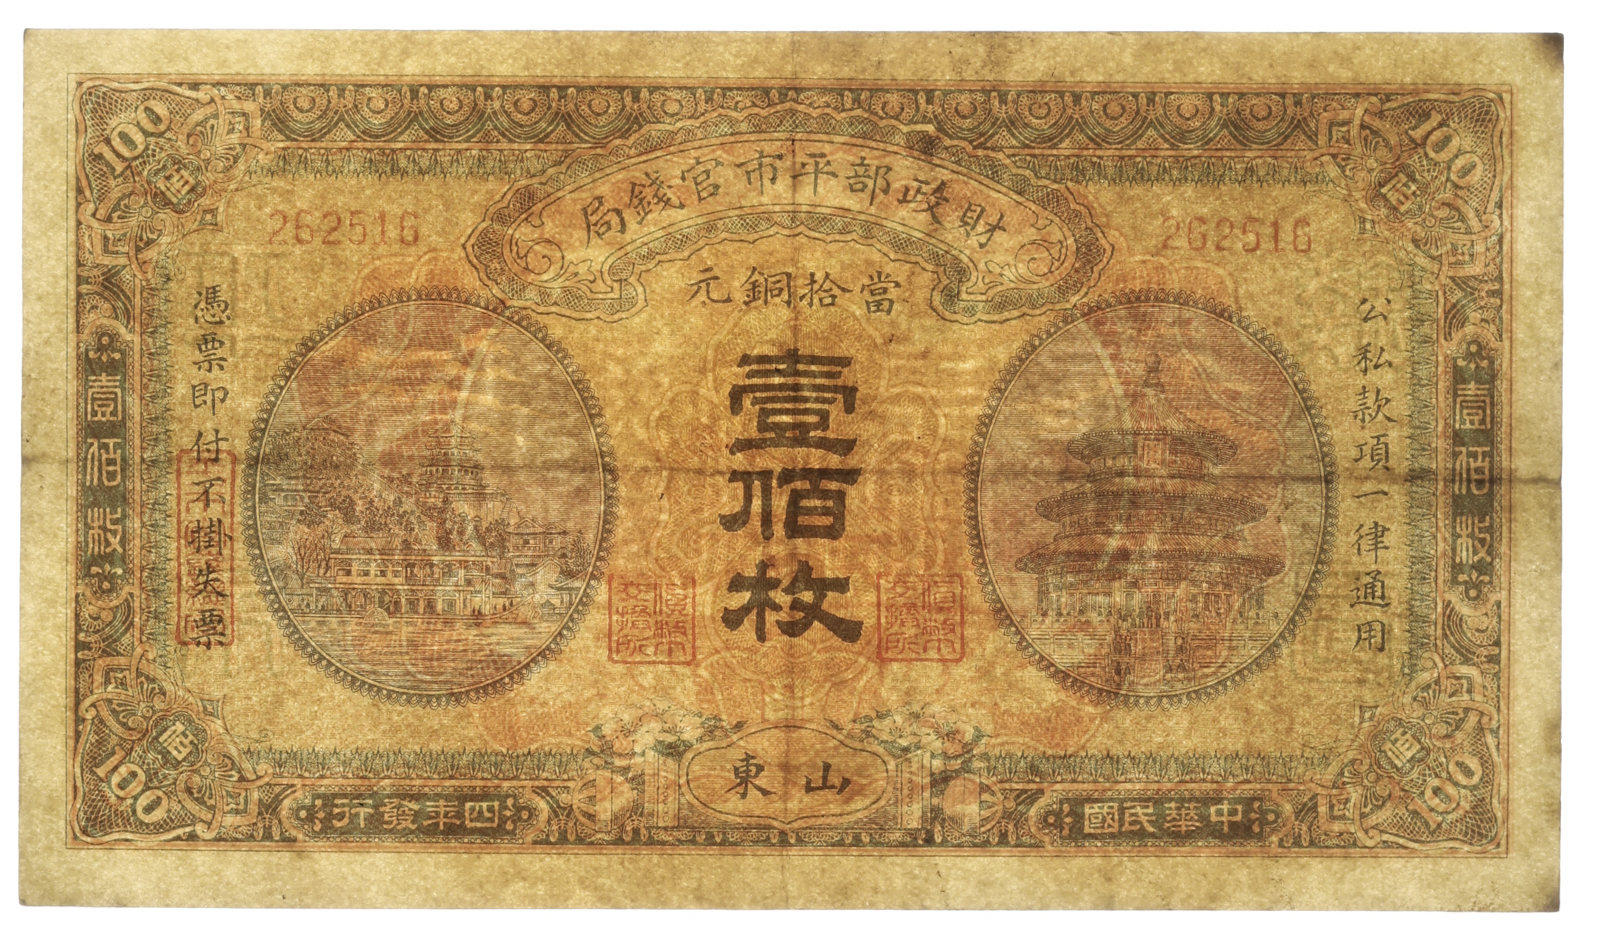 貨幣博物館 | 紙幣 Banknotes 財政部平市官銭局 當拾銅元(壹佰枚) 100Coppers 1915 (VF)美品